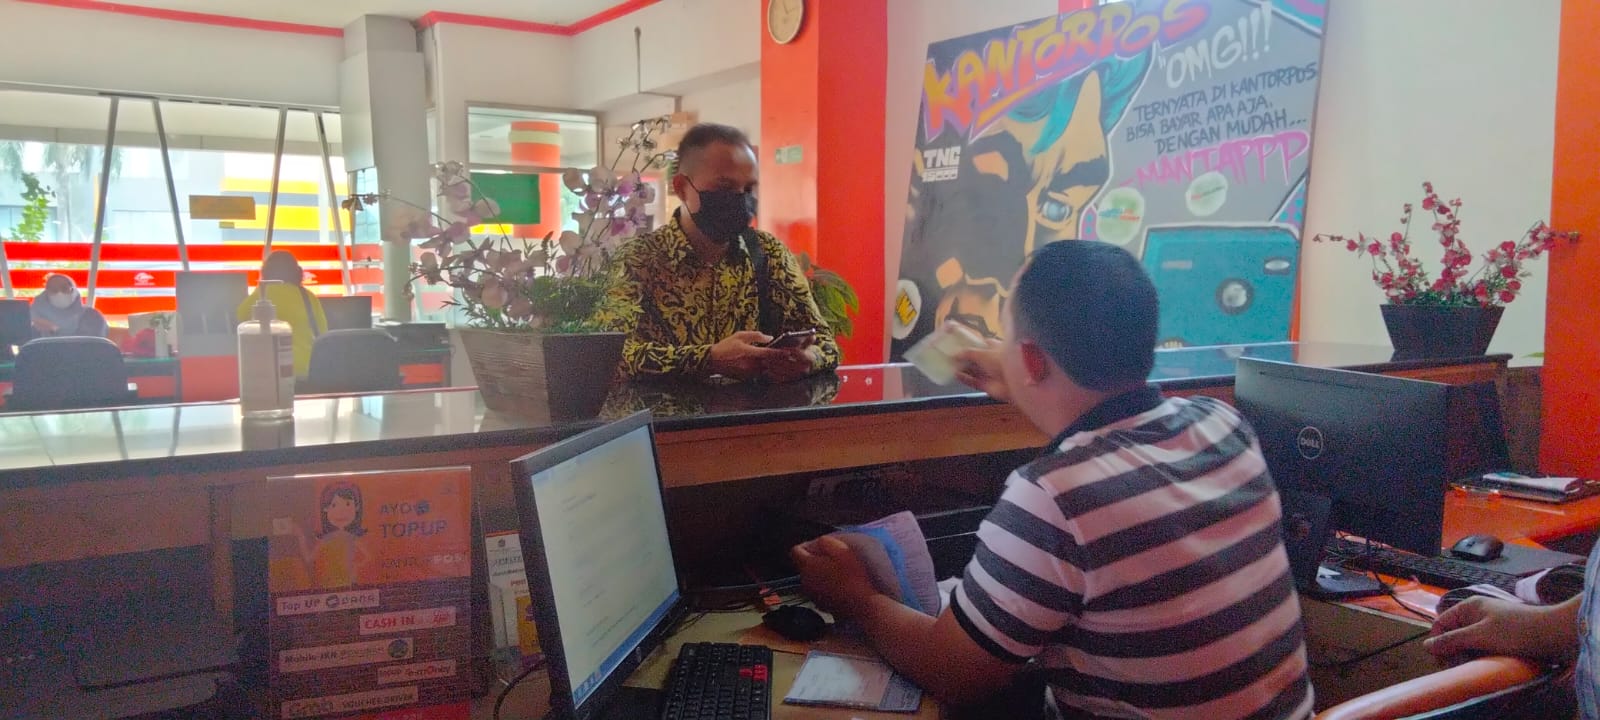 Masyarakat yang mengurus dan mengambil tilang di kantor PT Pos Indonesia, Jalan Daan Mogot, Kota Tangerang.